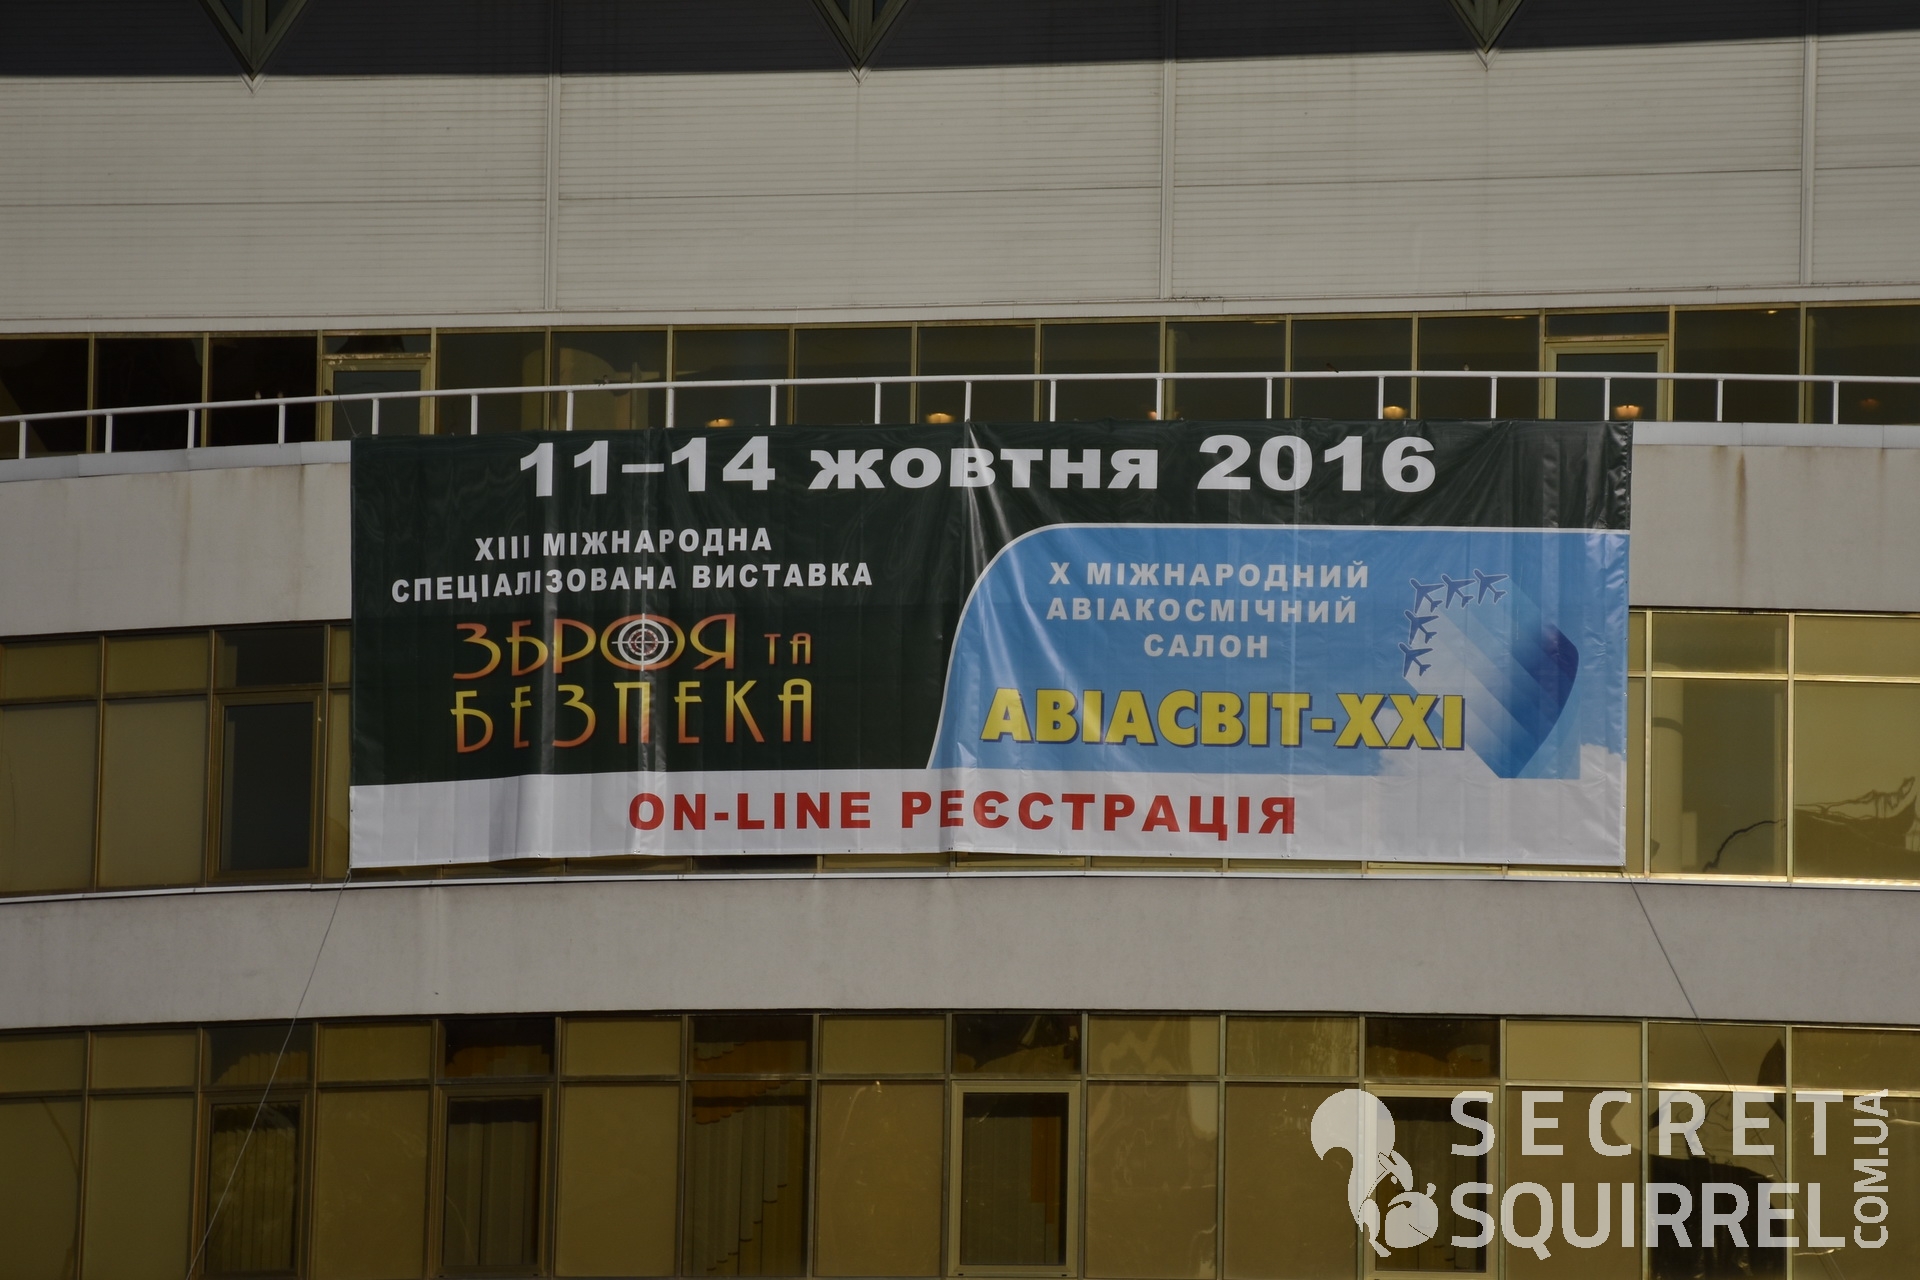 Выставка Оружие и безопасность 2016 - secretsquirrel.com.ua